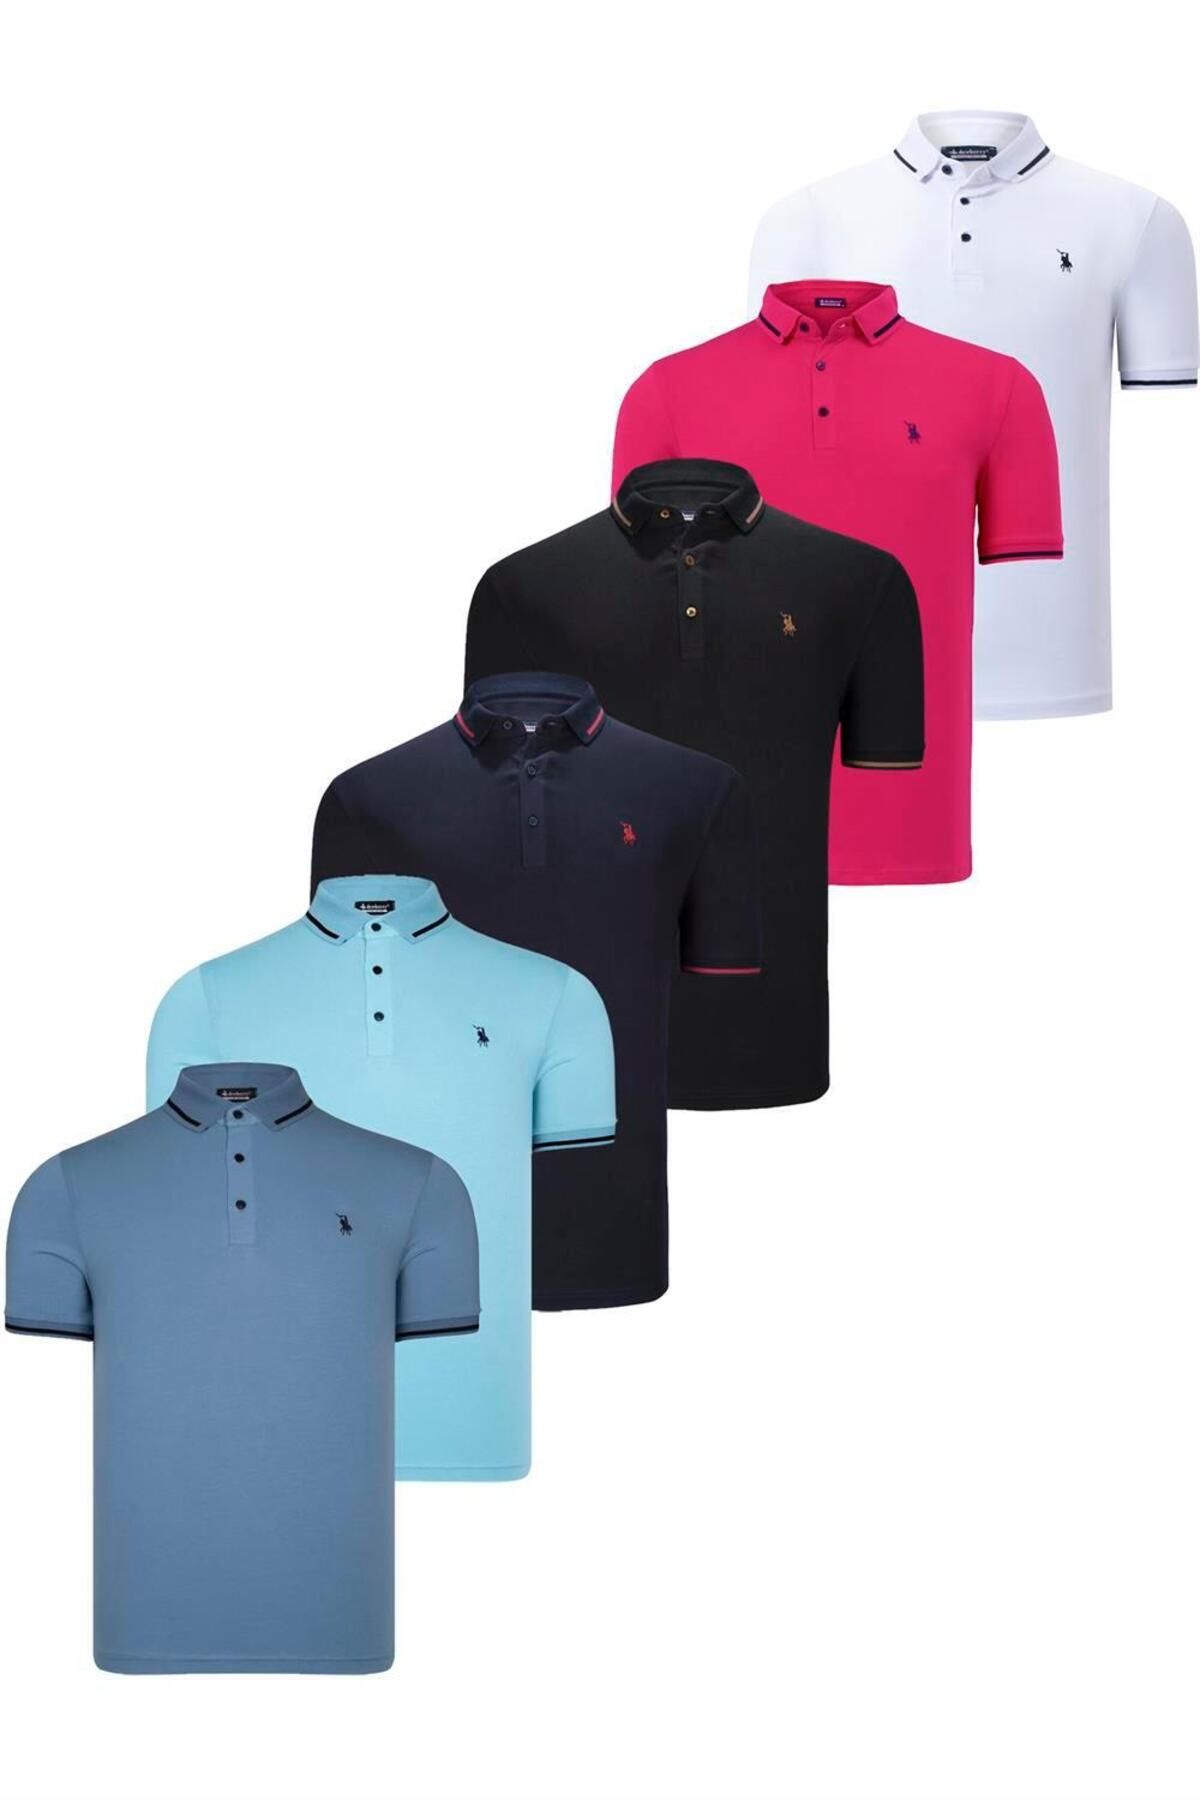 Dewberry ست شش تایی تی شرت مردانه T8586 DEWBERRY-مشکی-سفید-آبی تیره-فیروزه ای-فوچیا-نیلی